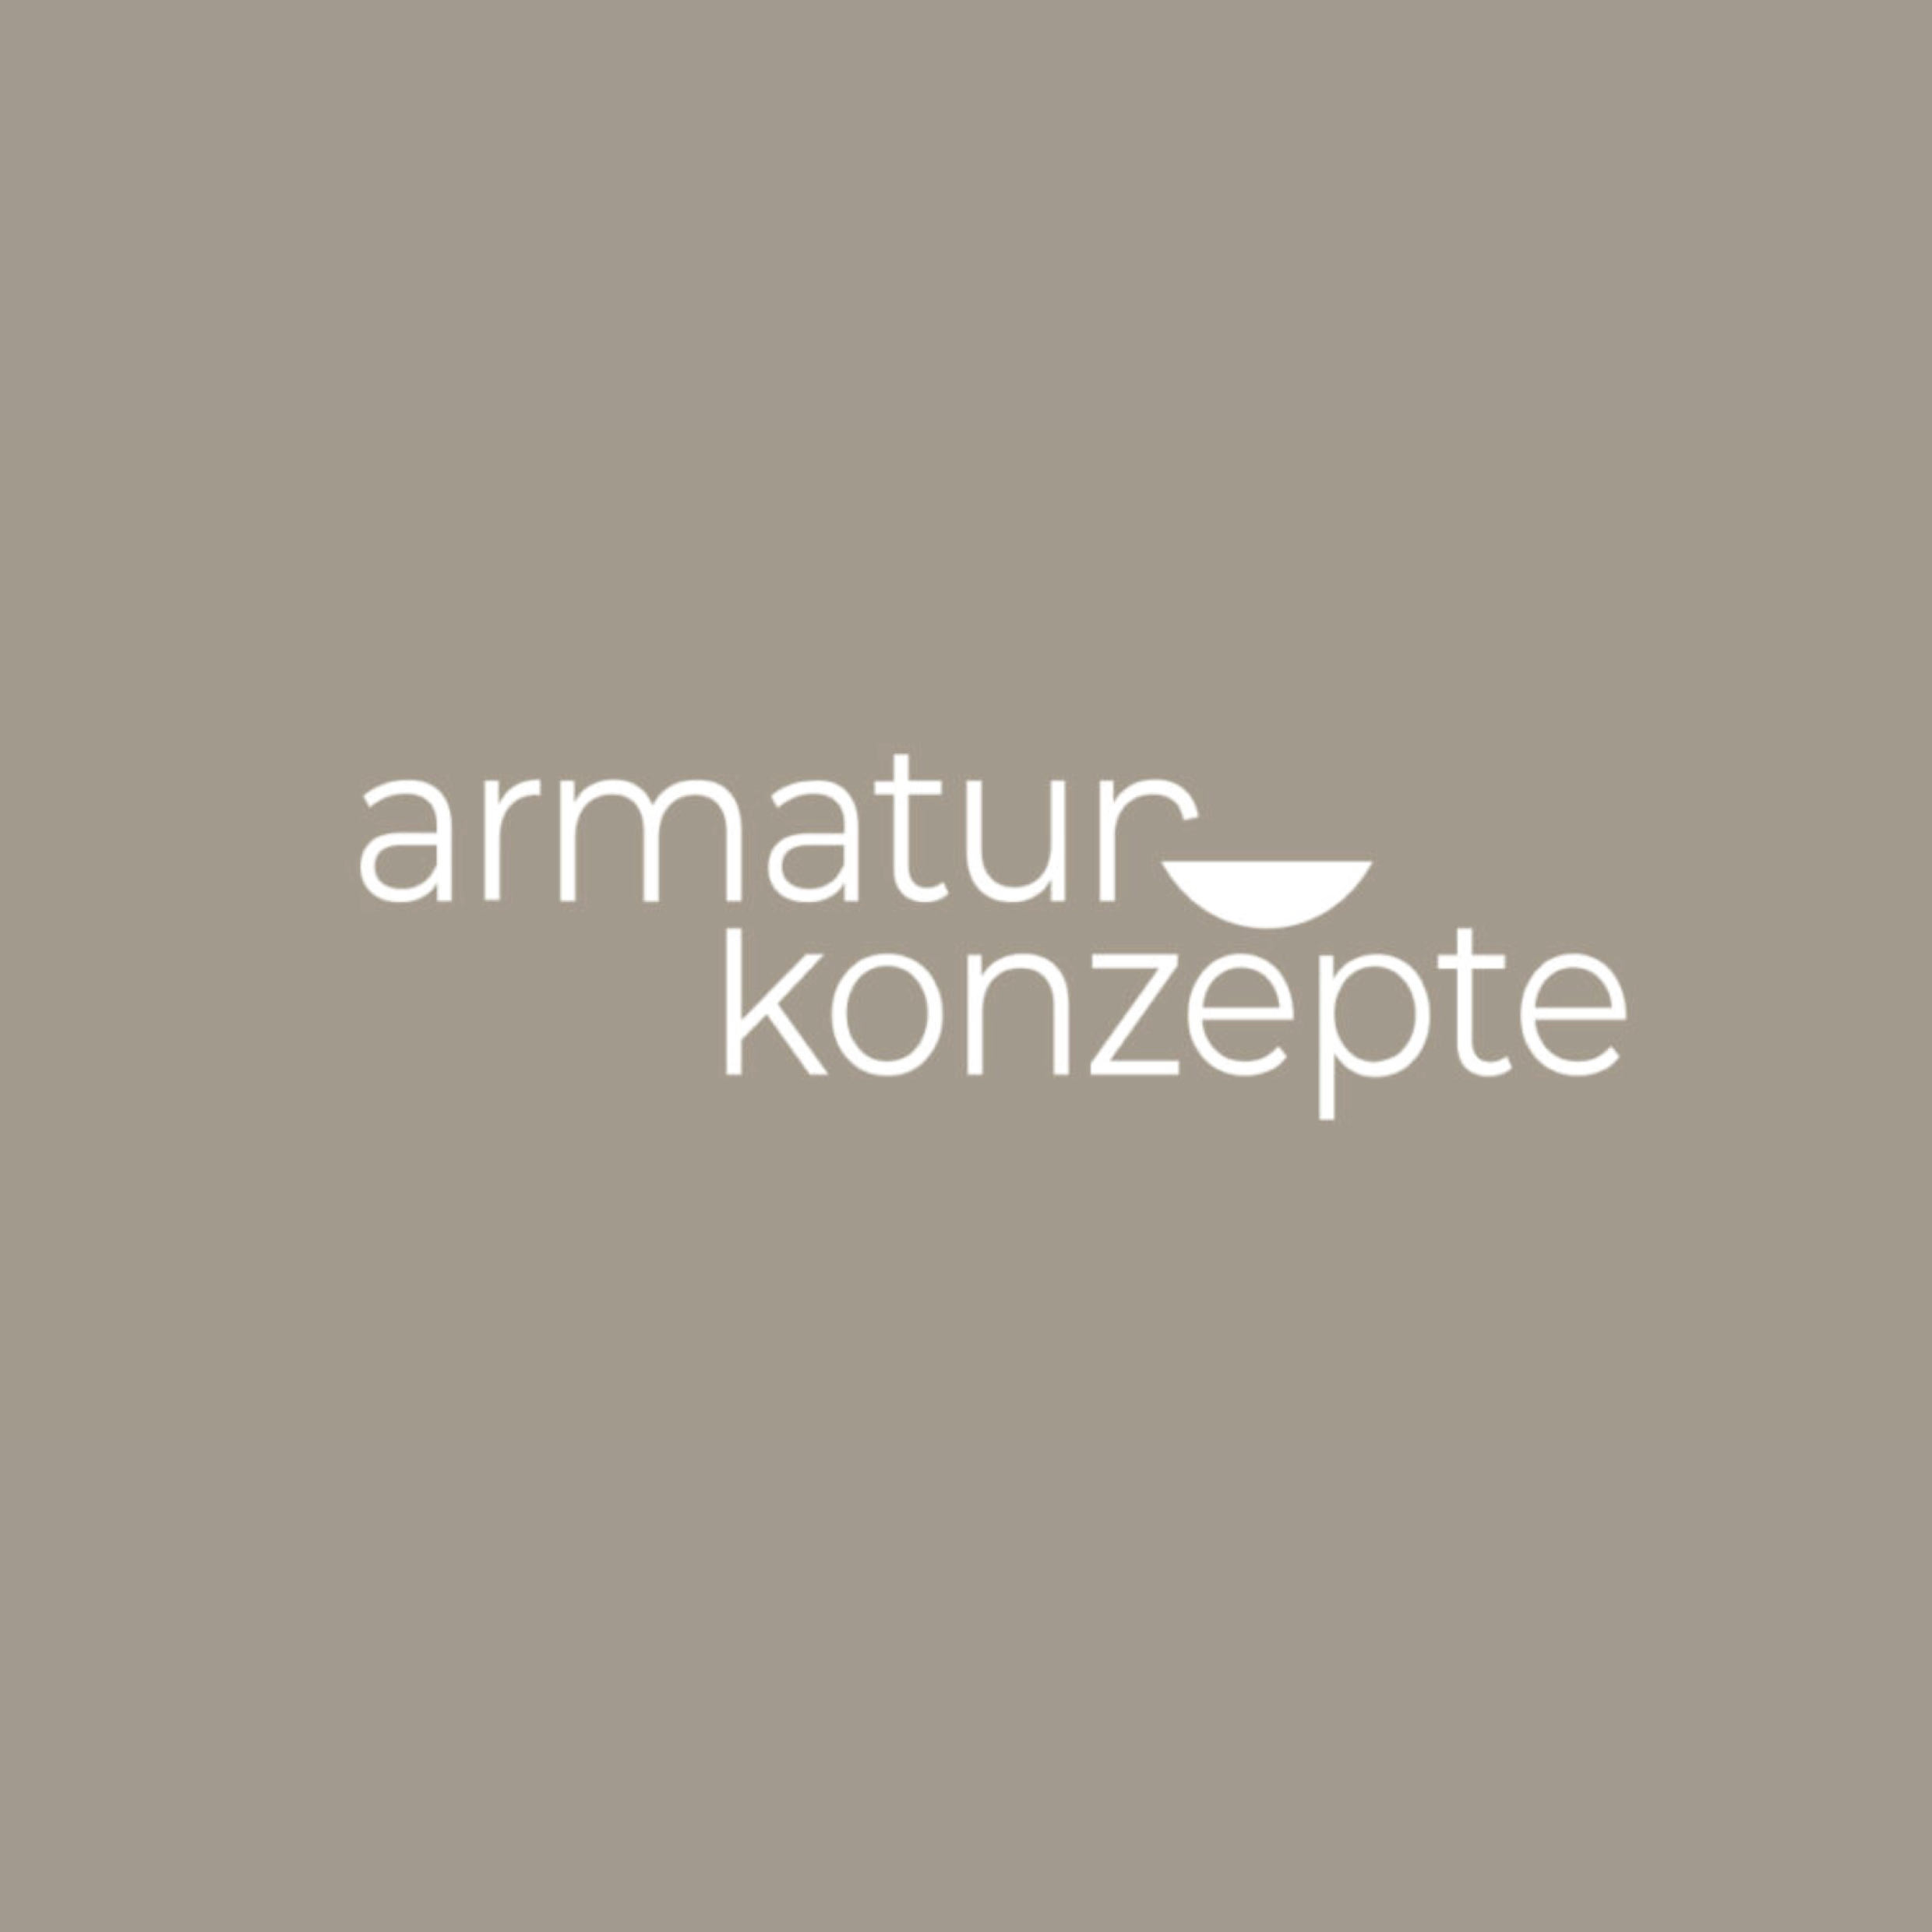 armatur-konzepte-badarmaturen-kuechenarmaturen-outdoor-armaturen-logo